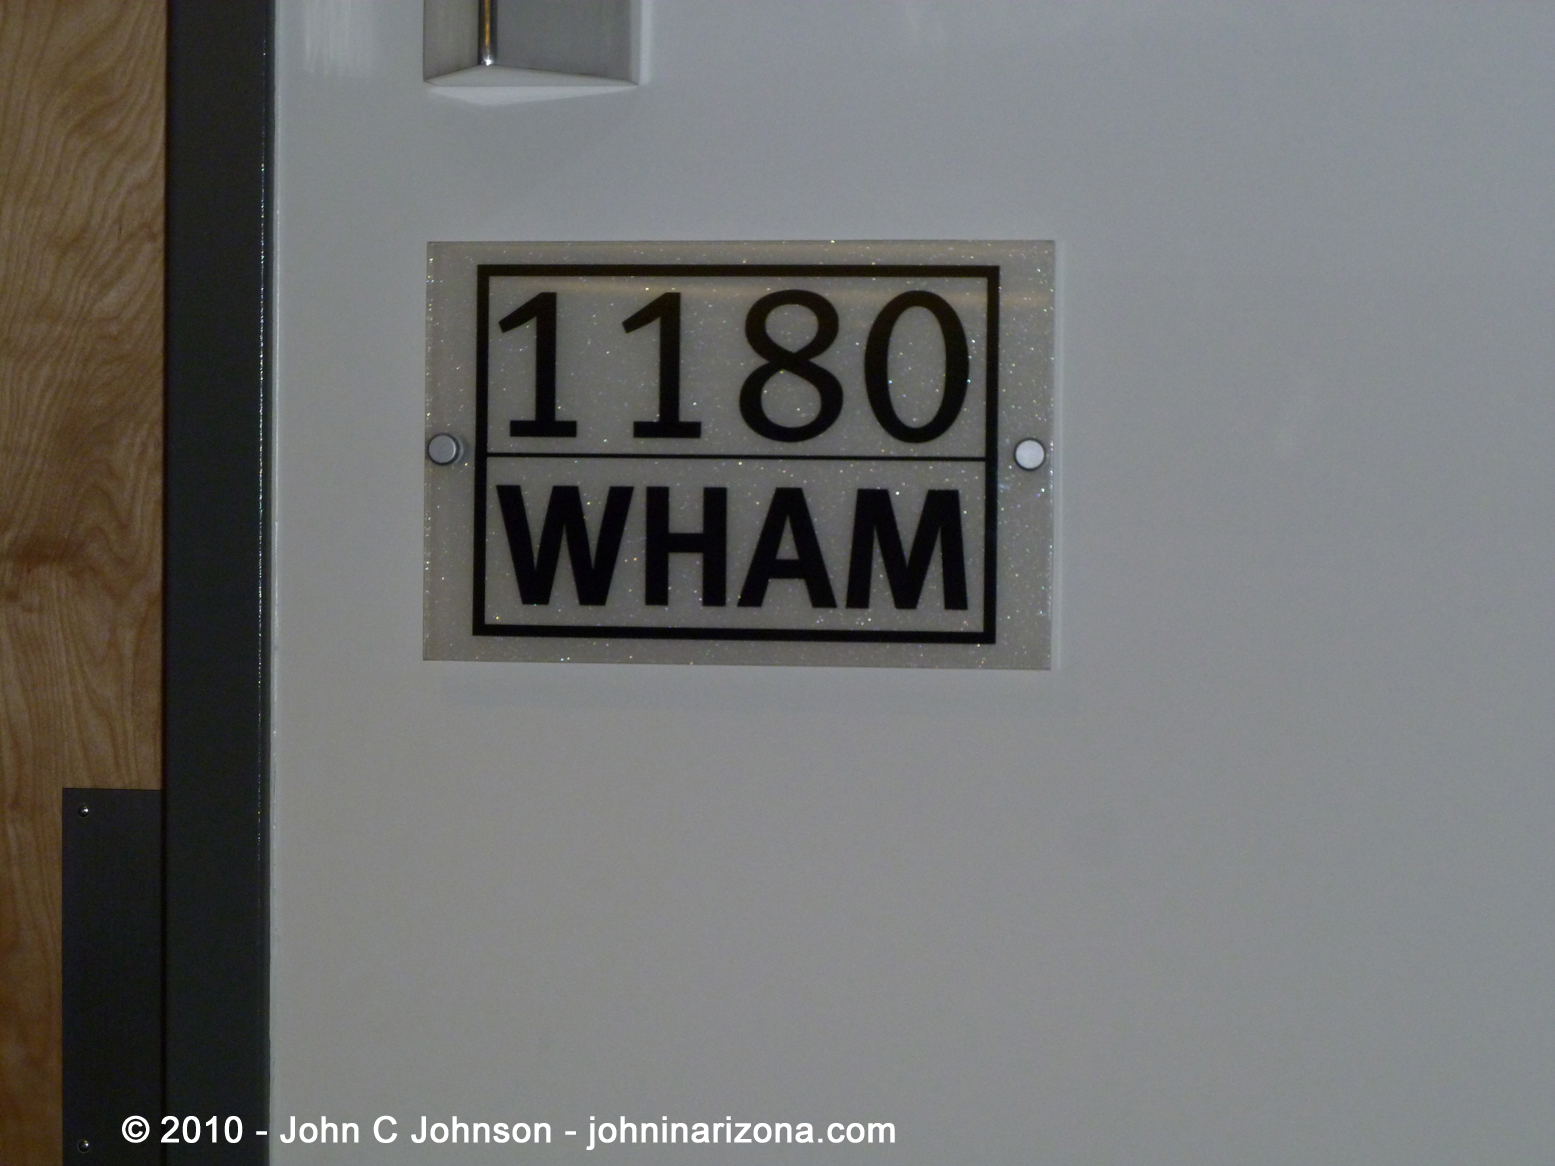 WHAM Radio 1180 Rochester, New York